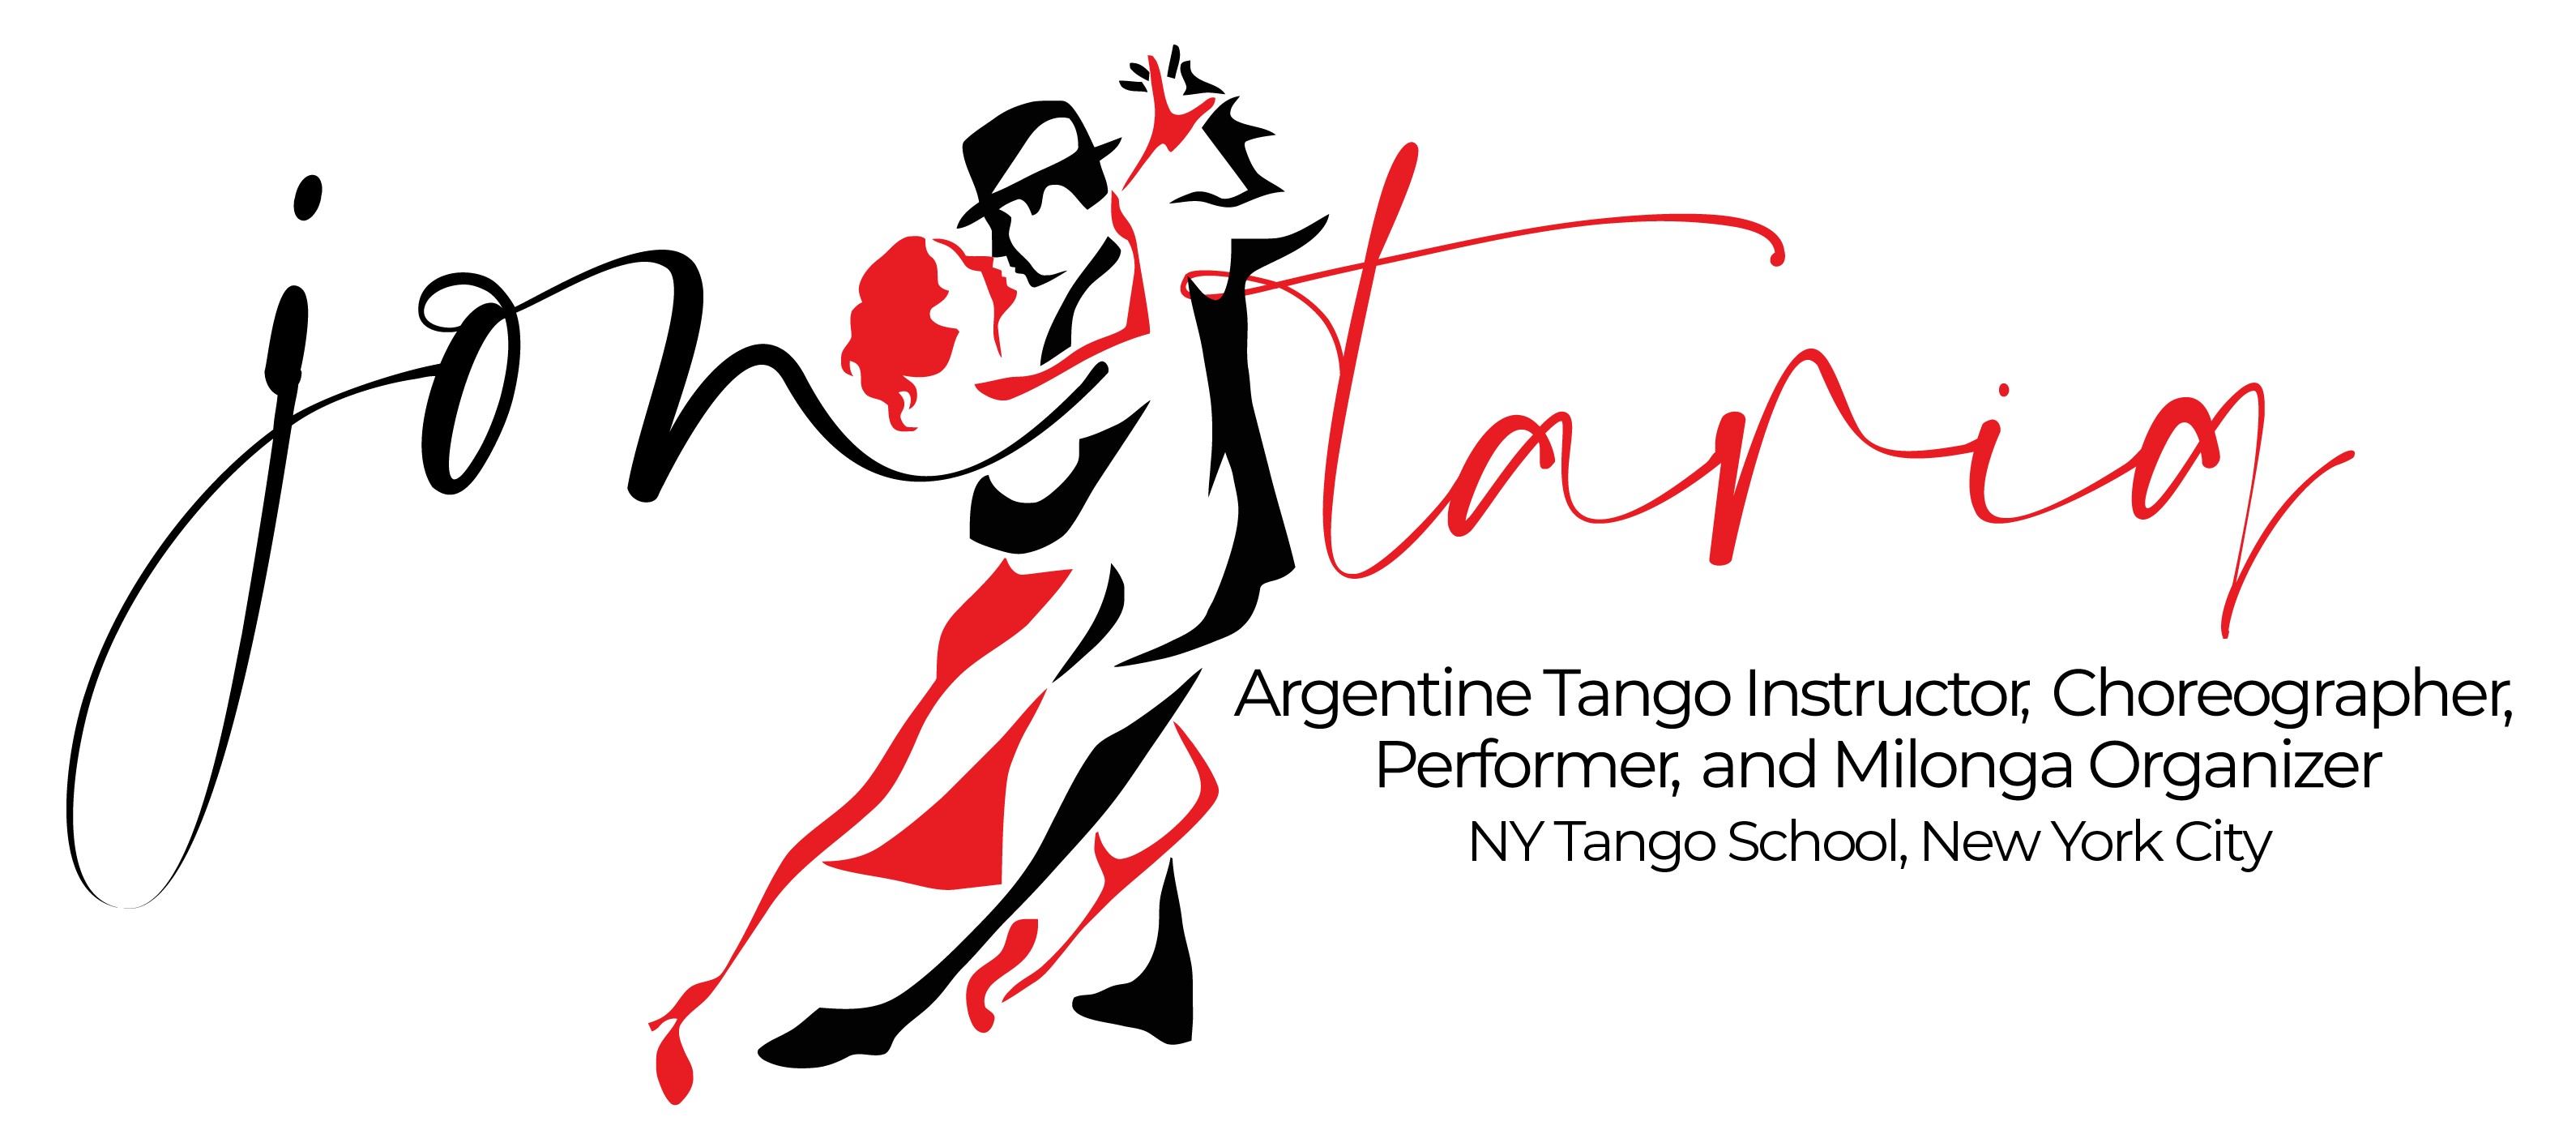 NY Tango School NYC